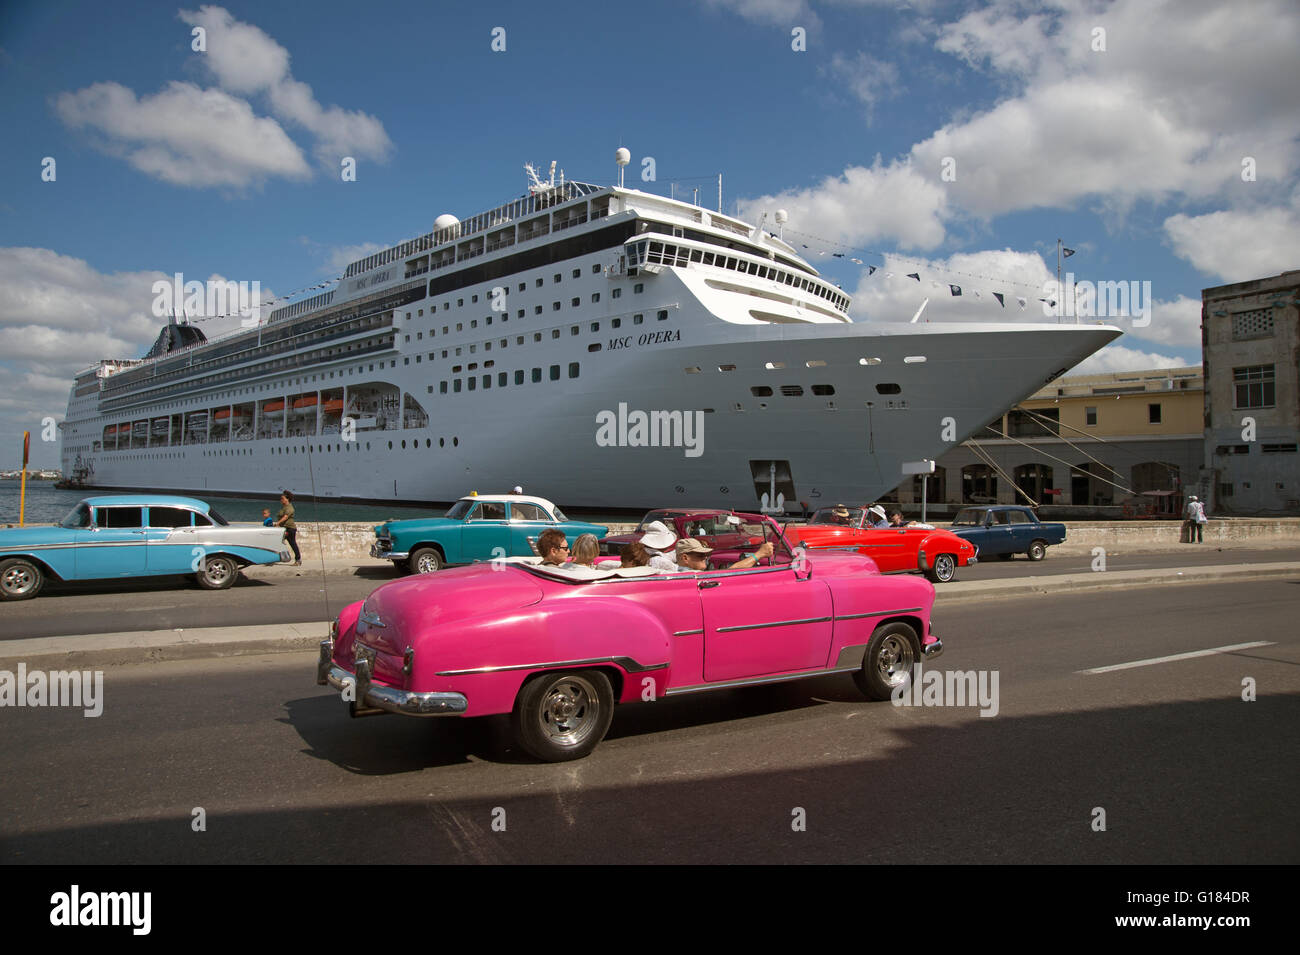 Eine alte restaurierte 50er amerikanisches Auto verwendet als Taxi fahren Vergangenheit angedockten Kreuzfahrtschiff in Havanna Vieja Kuba Stockfoto